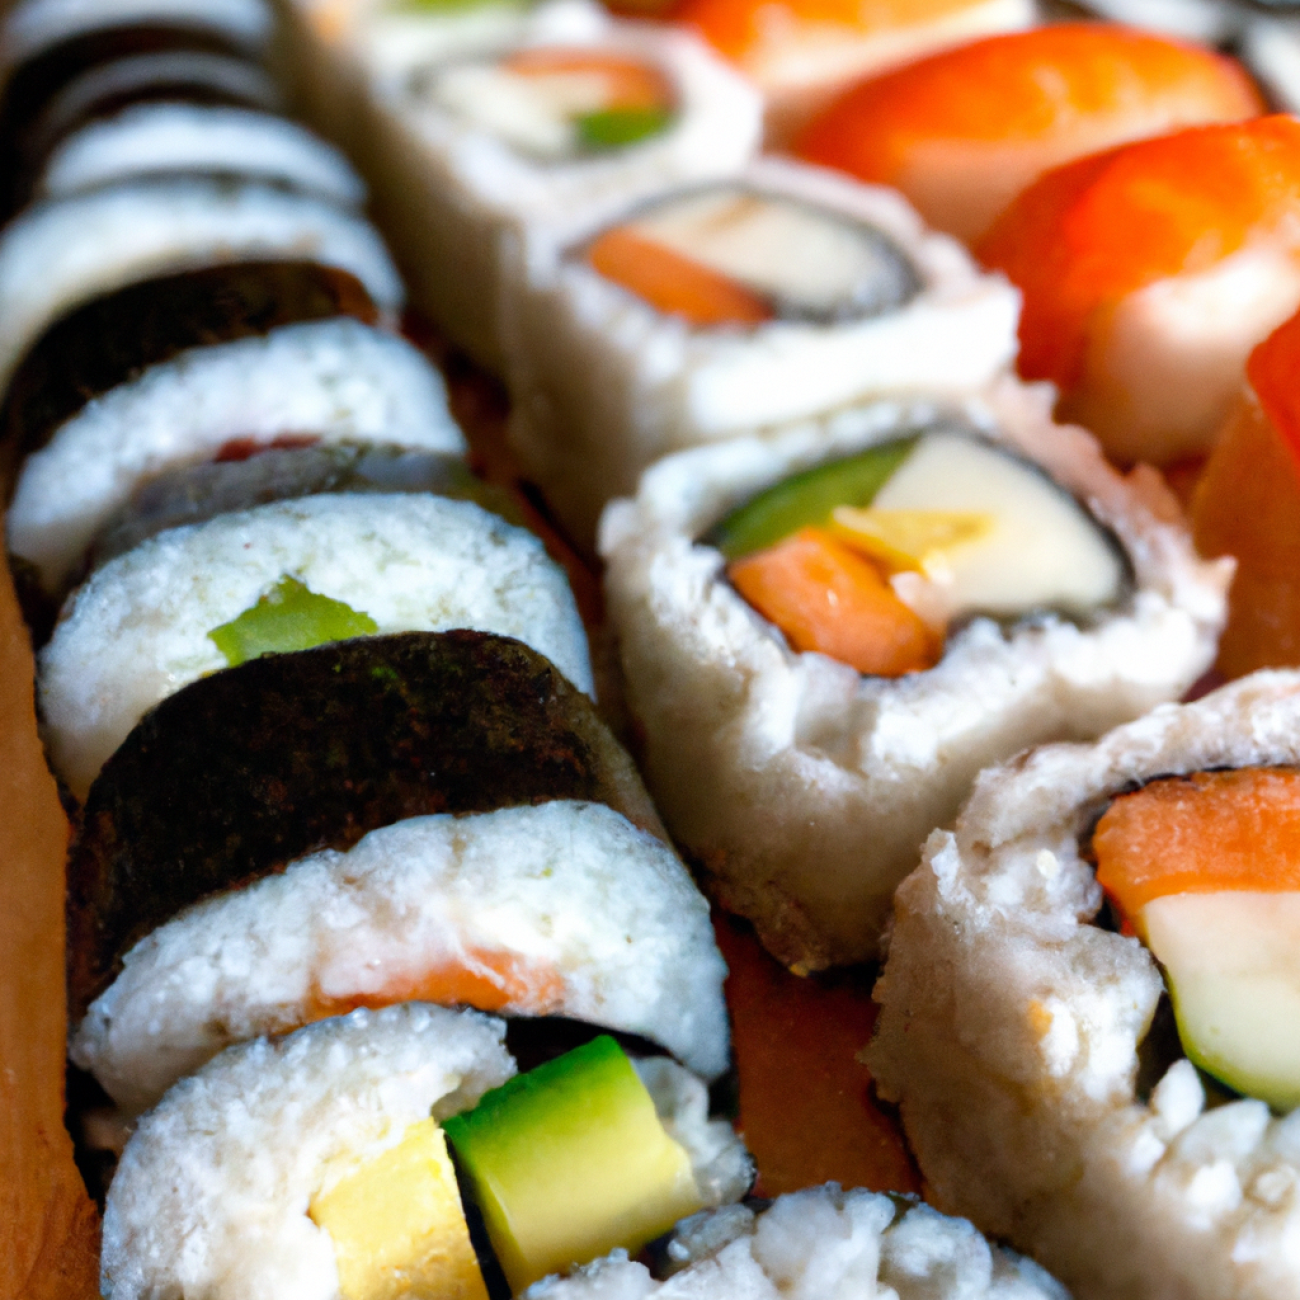 2. Sushi Time - Klasické sushi s mistrovským zpracováním